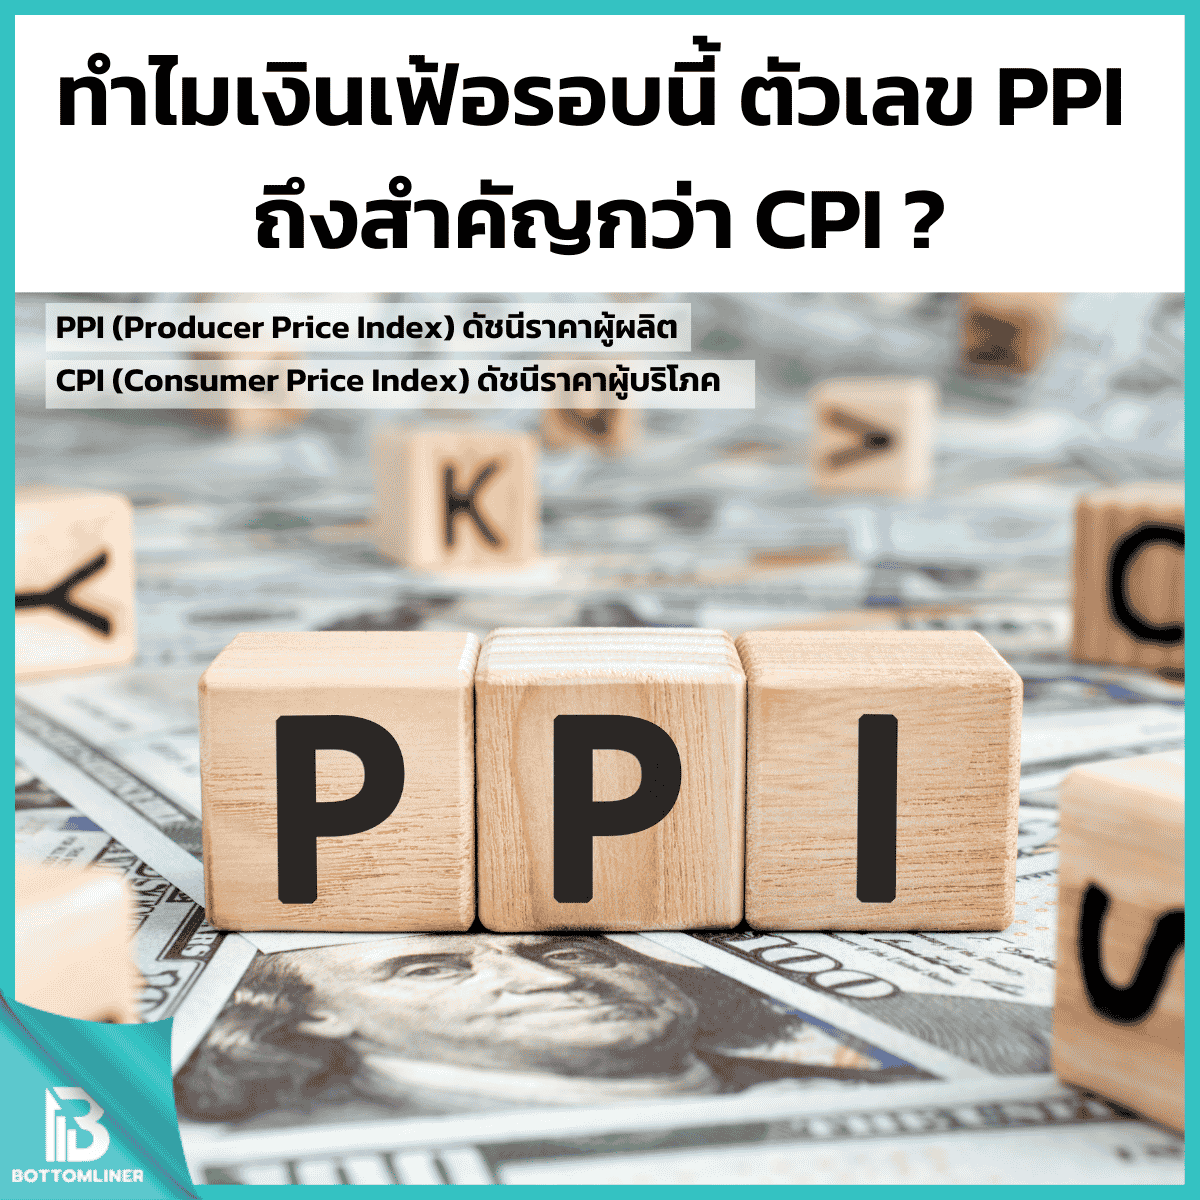 ทำไมเงินเฟ้อรอบนี้ ตัวเลข PPI ถึงสำคัญกว่า CPI?